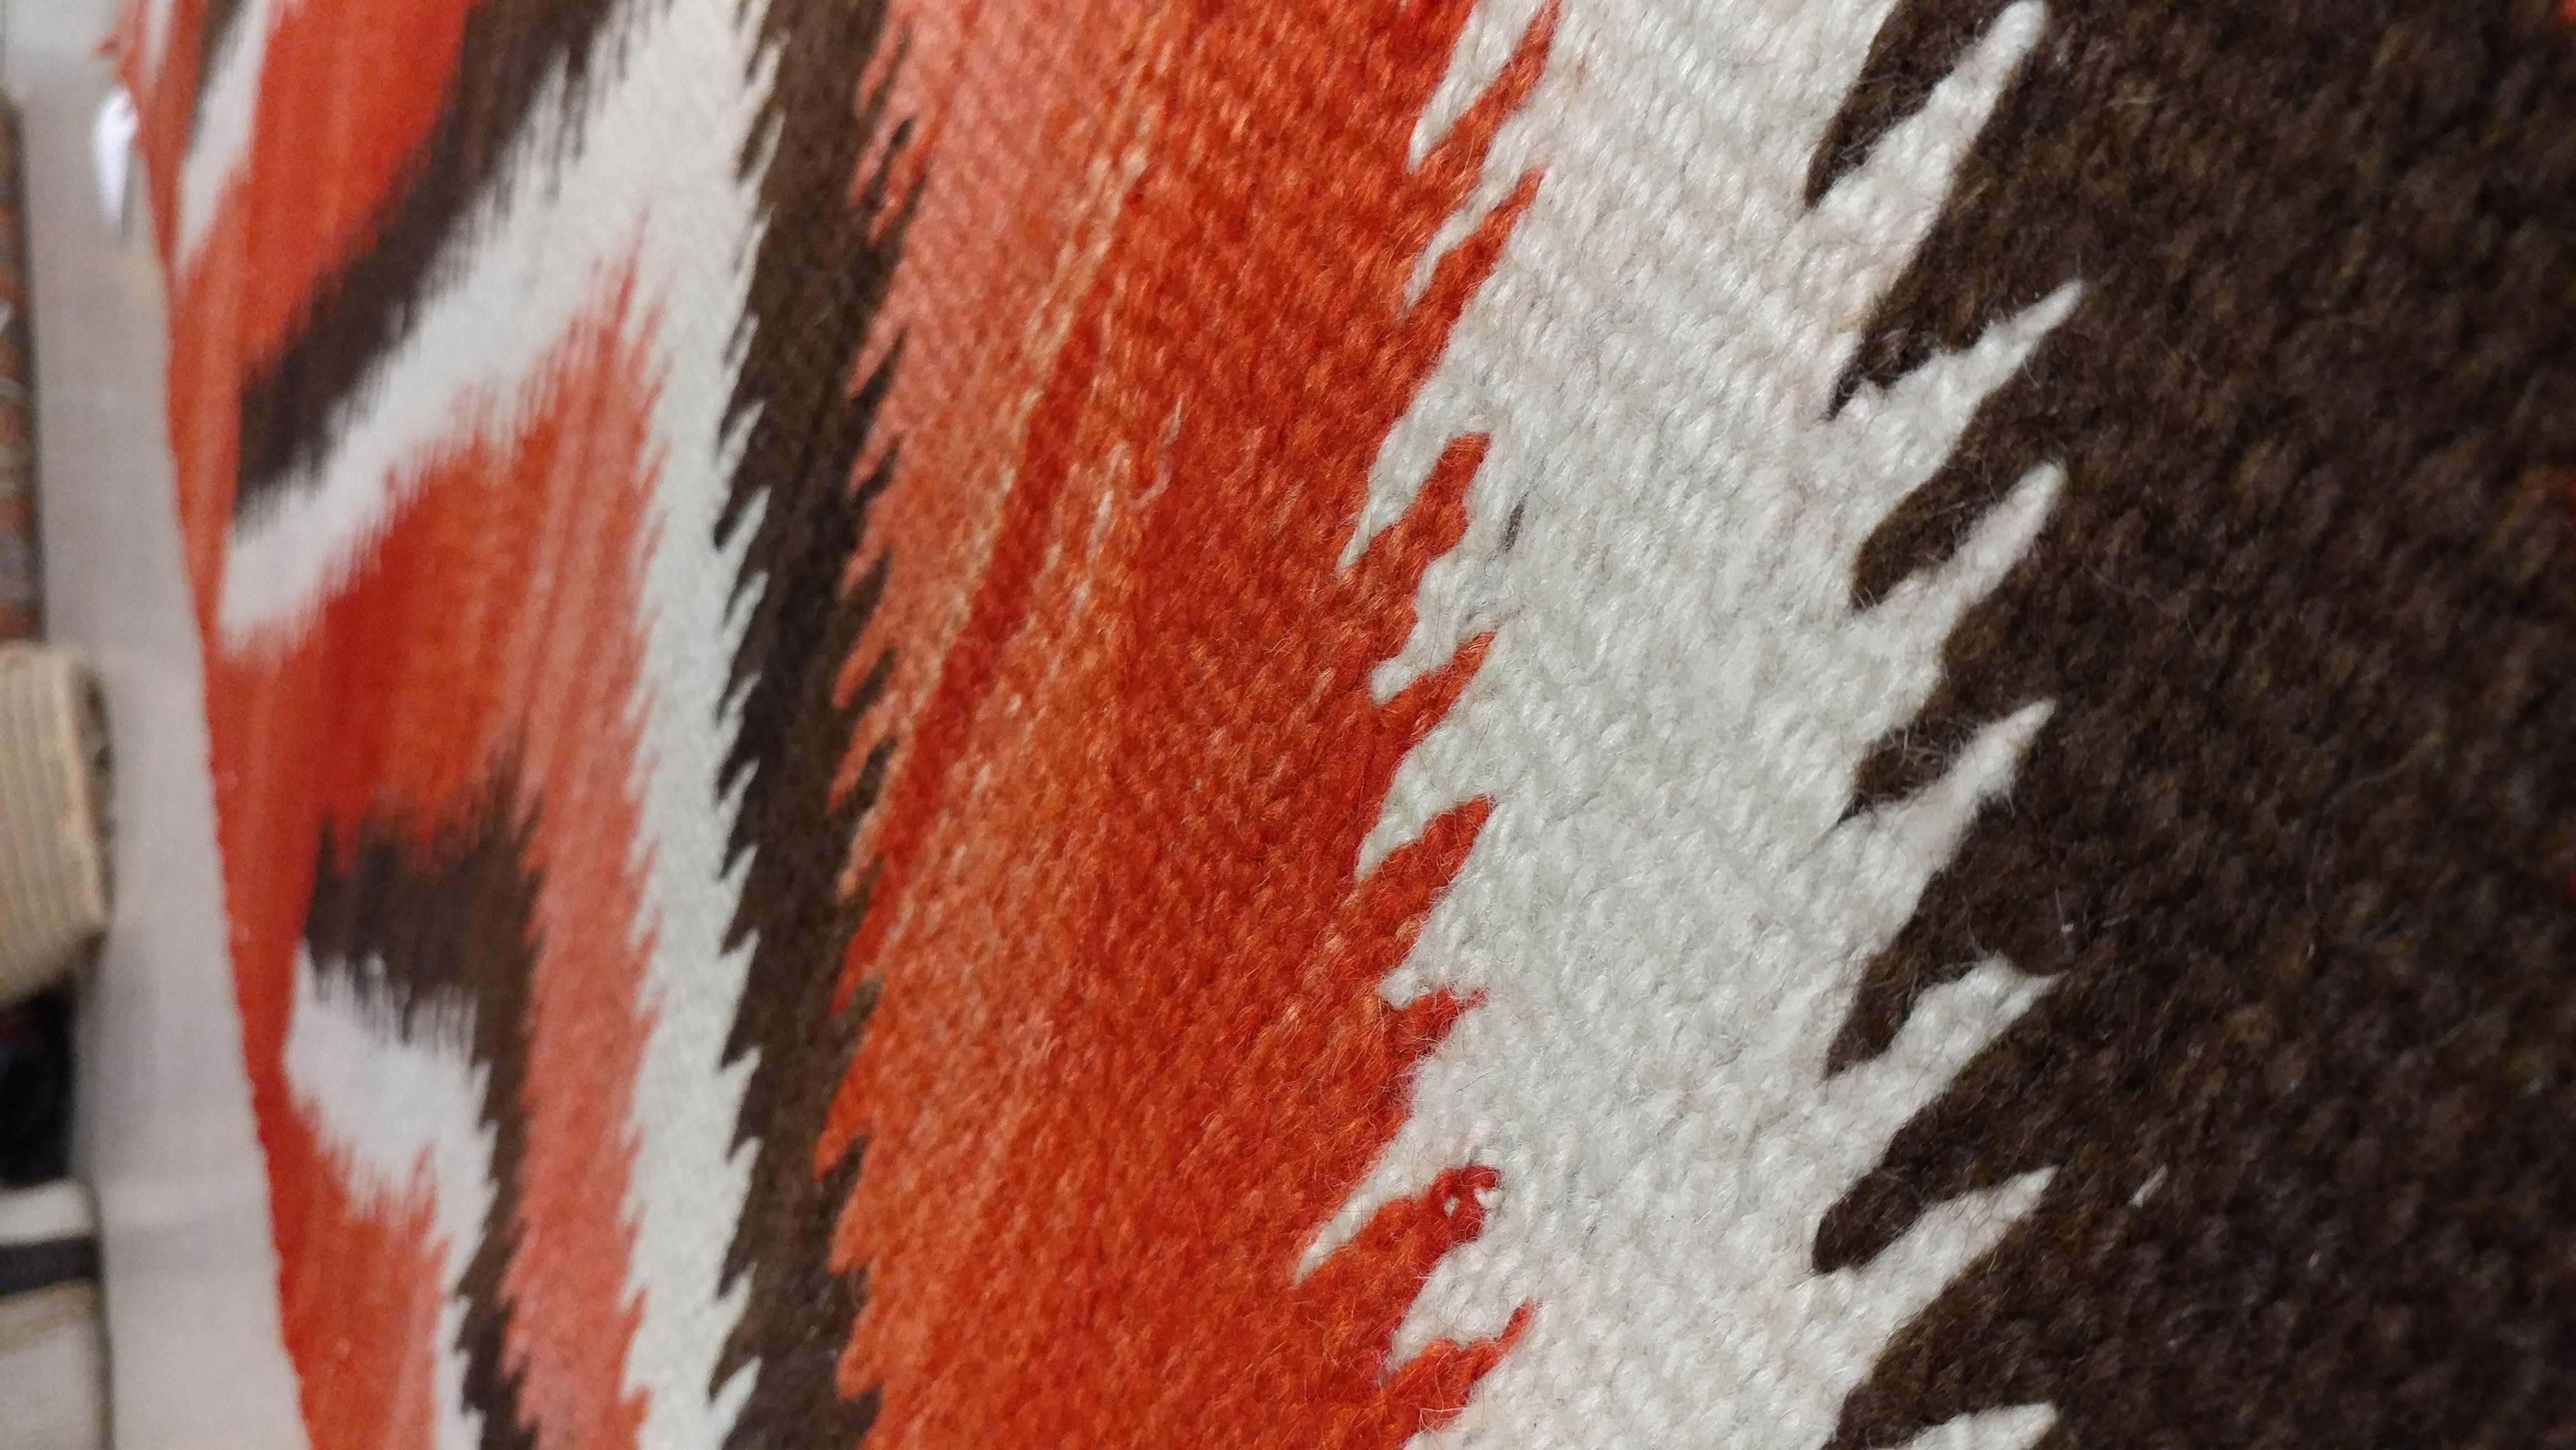 American Antique Storm Navajo Carpet, Folk Rug, Handmade Wool, Beige, Red, Brown